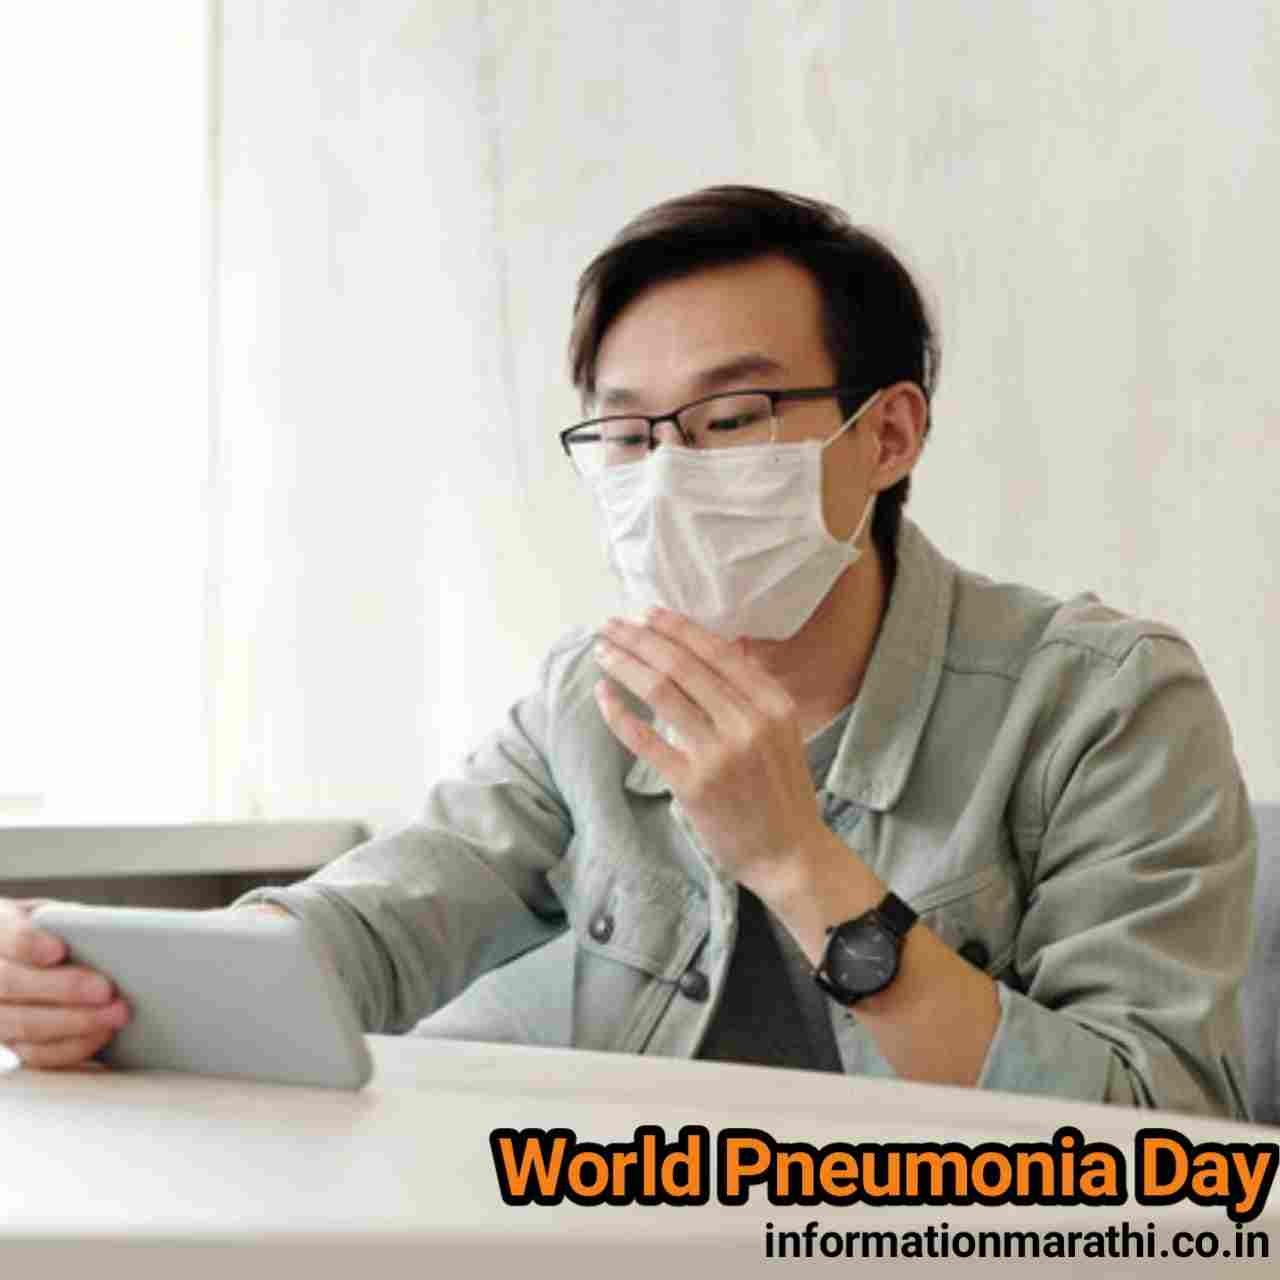 World Pneumonia Day Information in Marathi